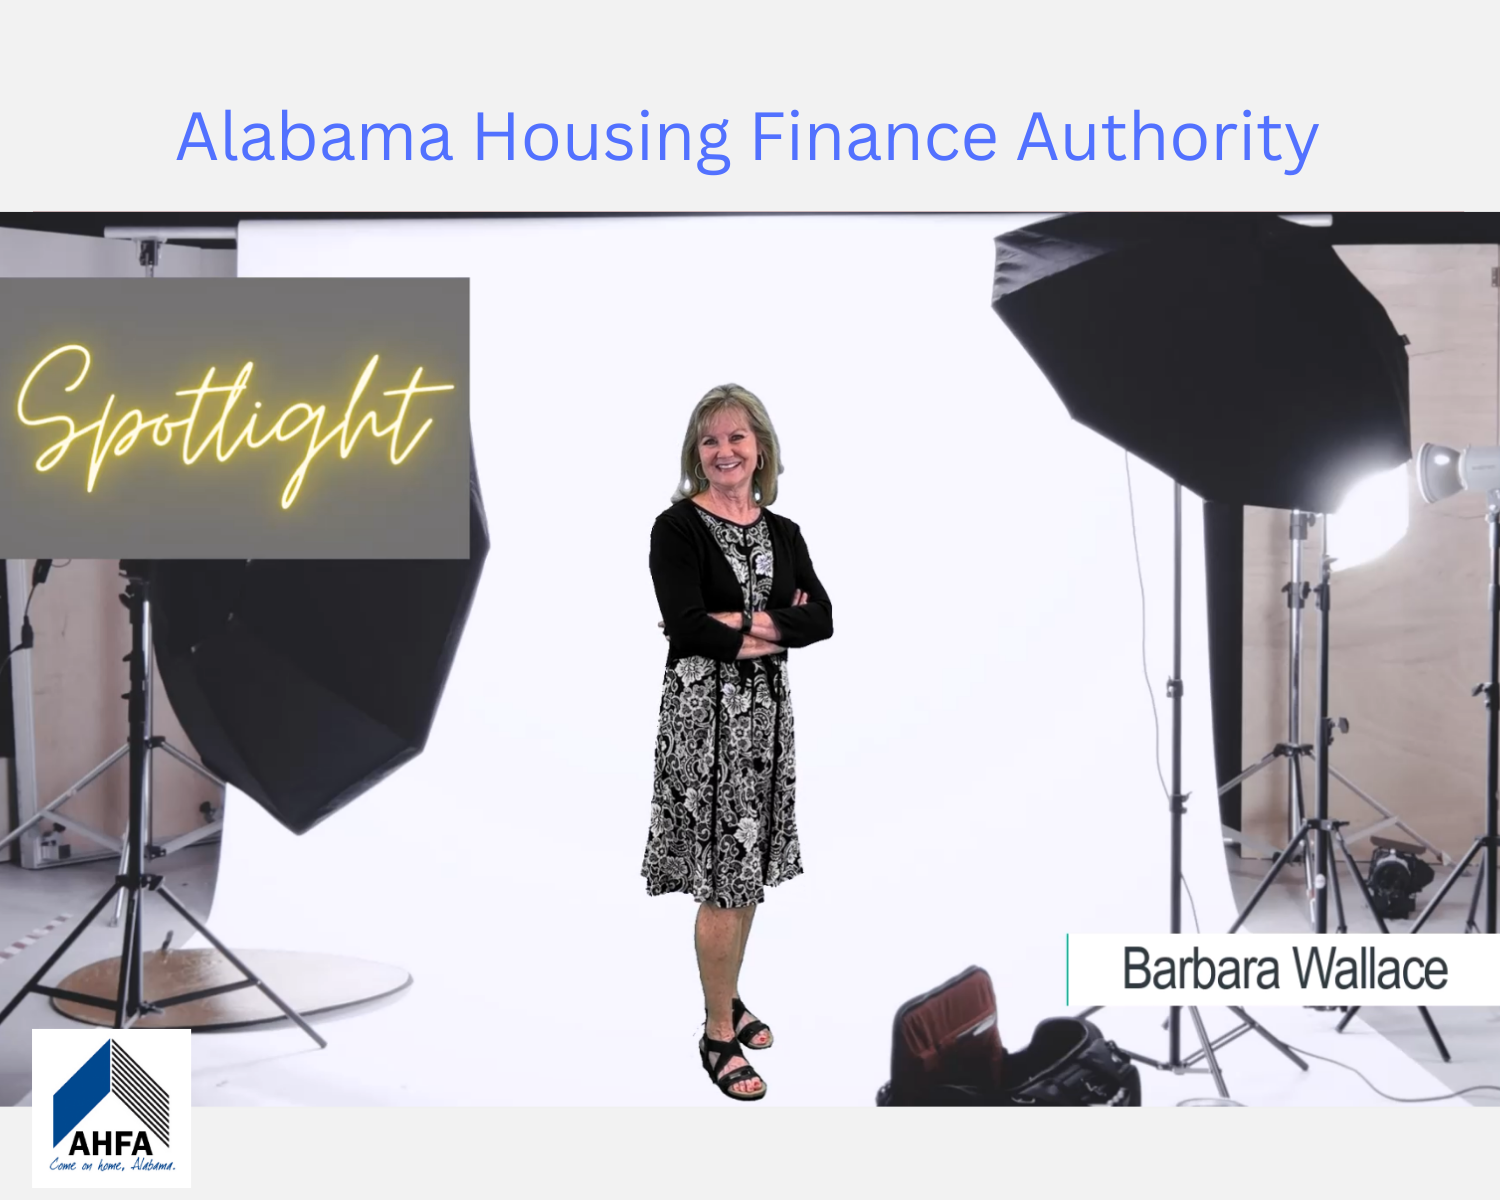 AHFA Retiree Spotlight on Barbara Wallace